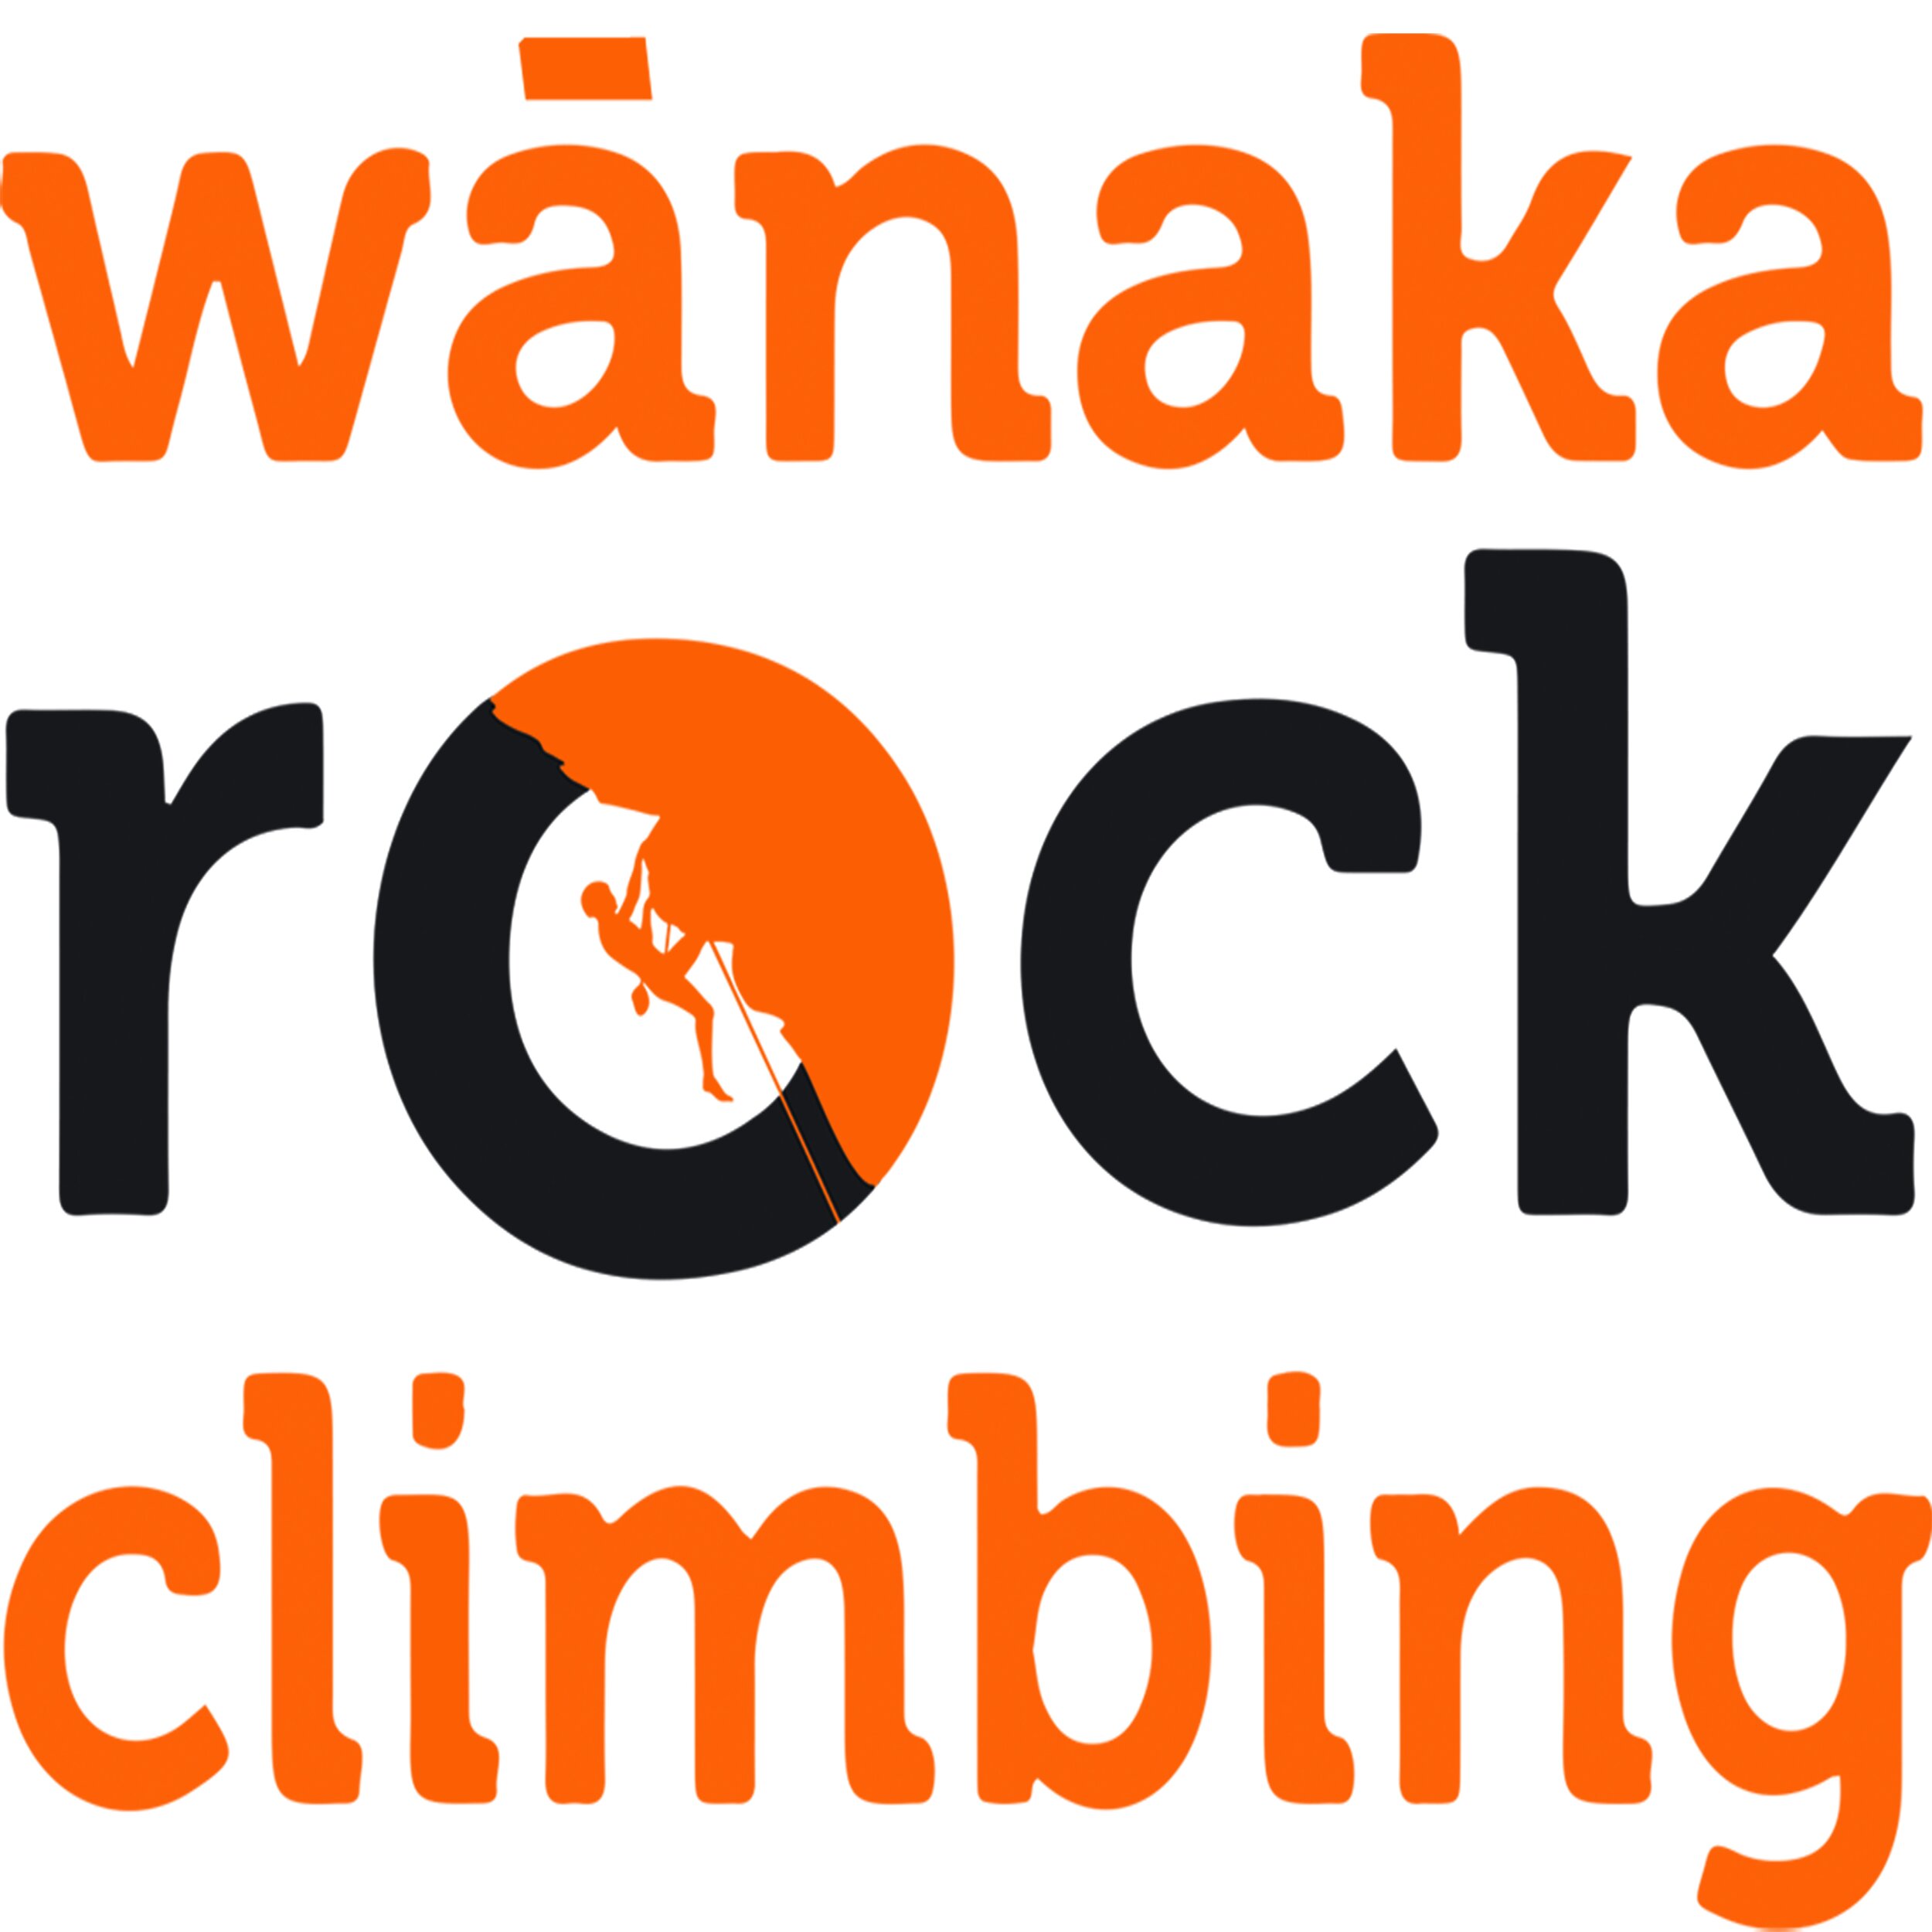 Rock Climbing Guide service in Wanaka &amp; surroundings - Wanaka Rock